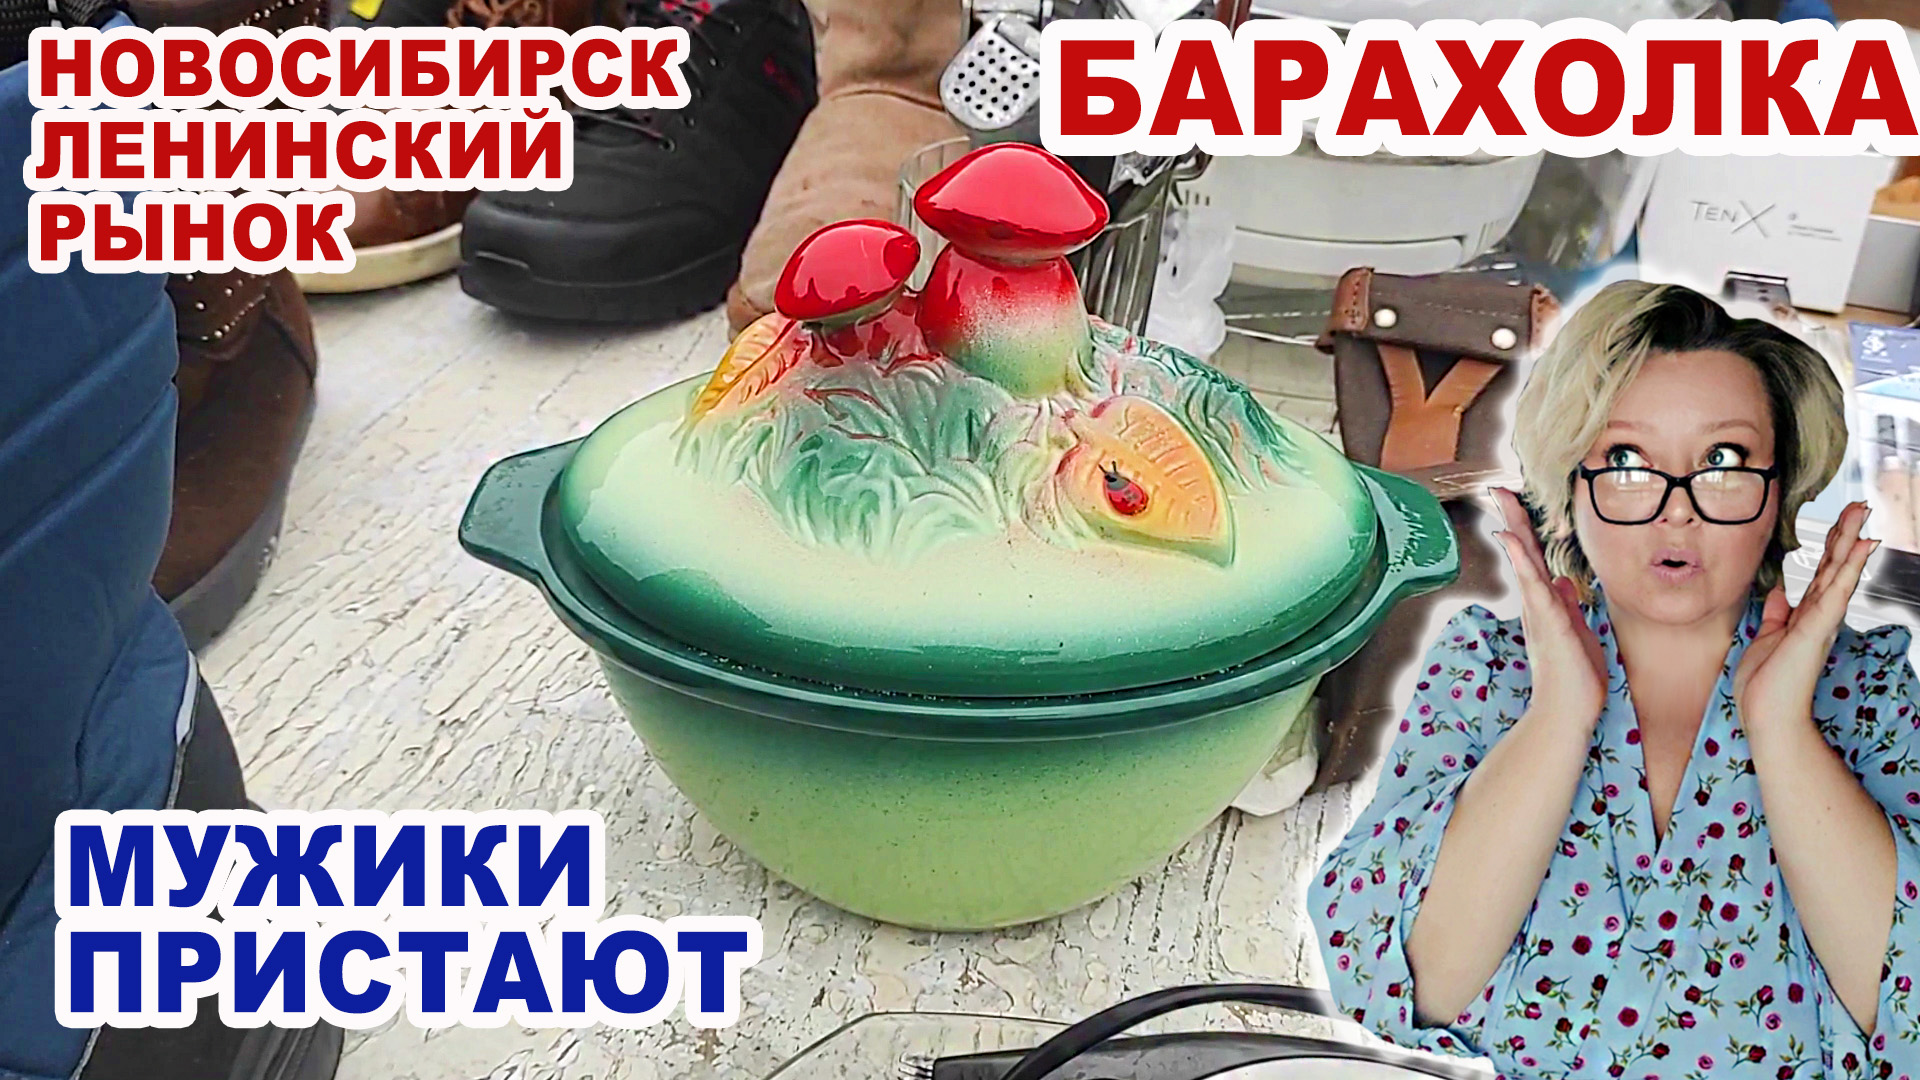 МНОГО! ДЁШЕВО! Удачная покупка. Обзор посуды на блошином рынке. Советский фарфор. Тарелки и фужеры.